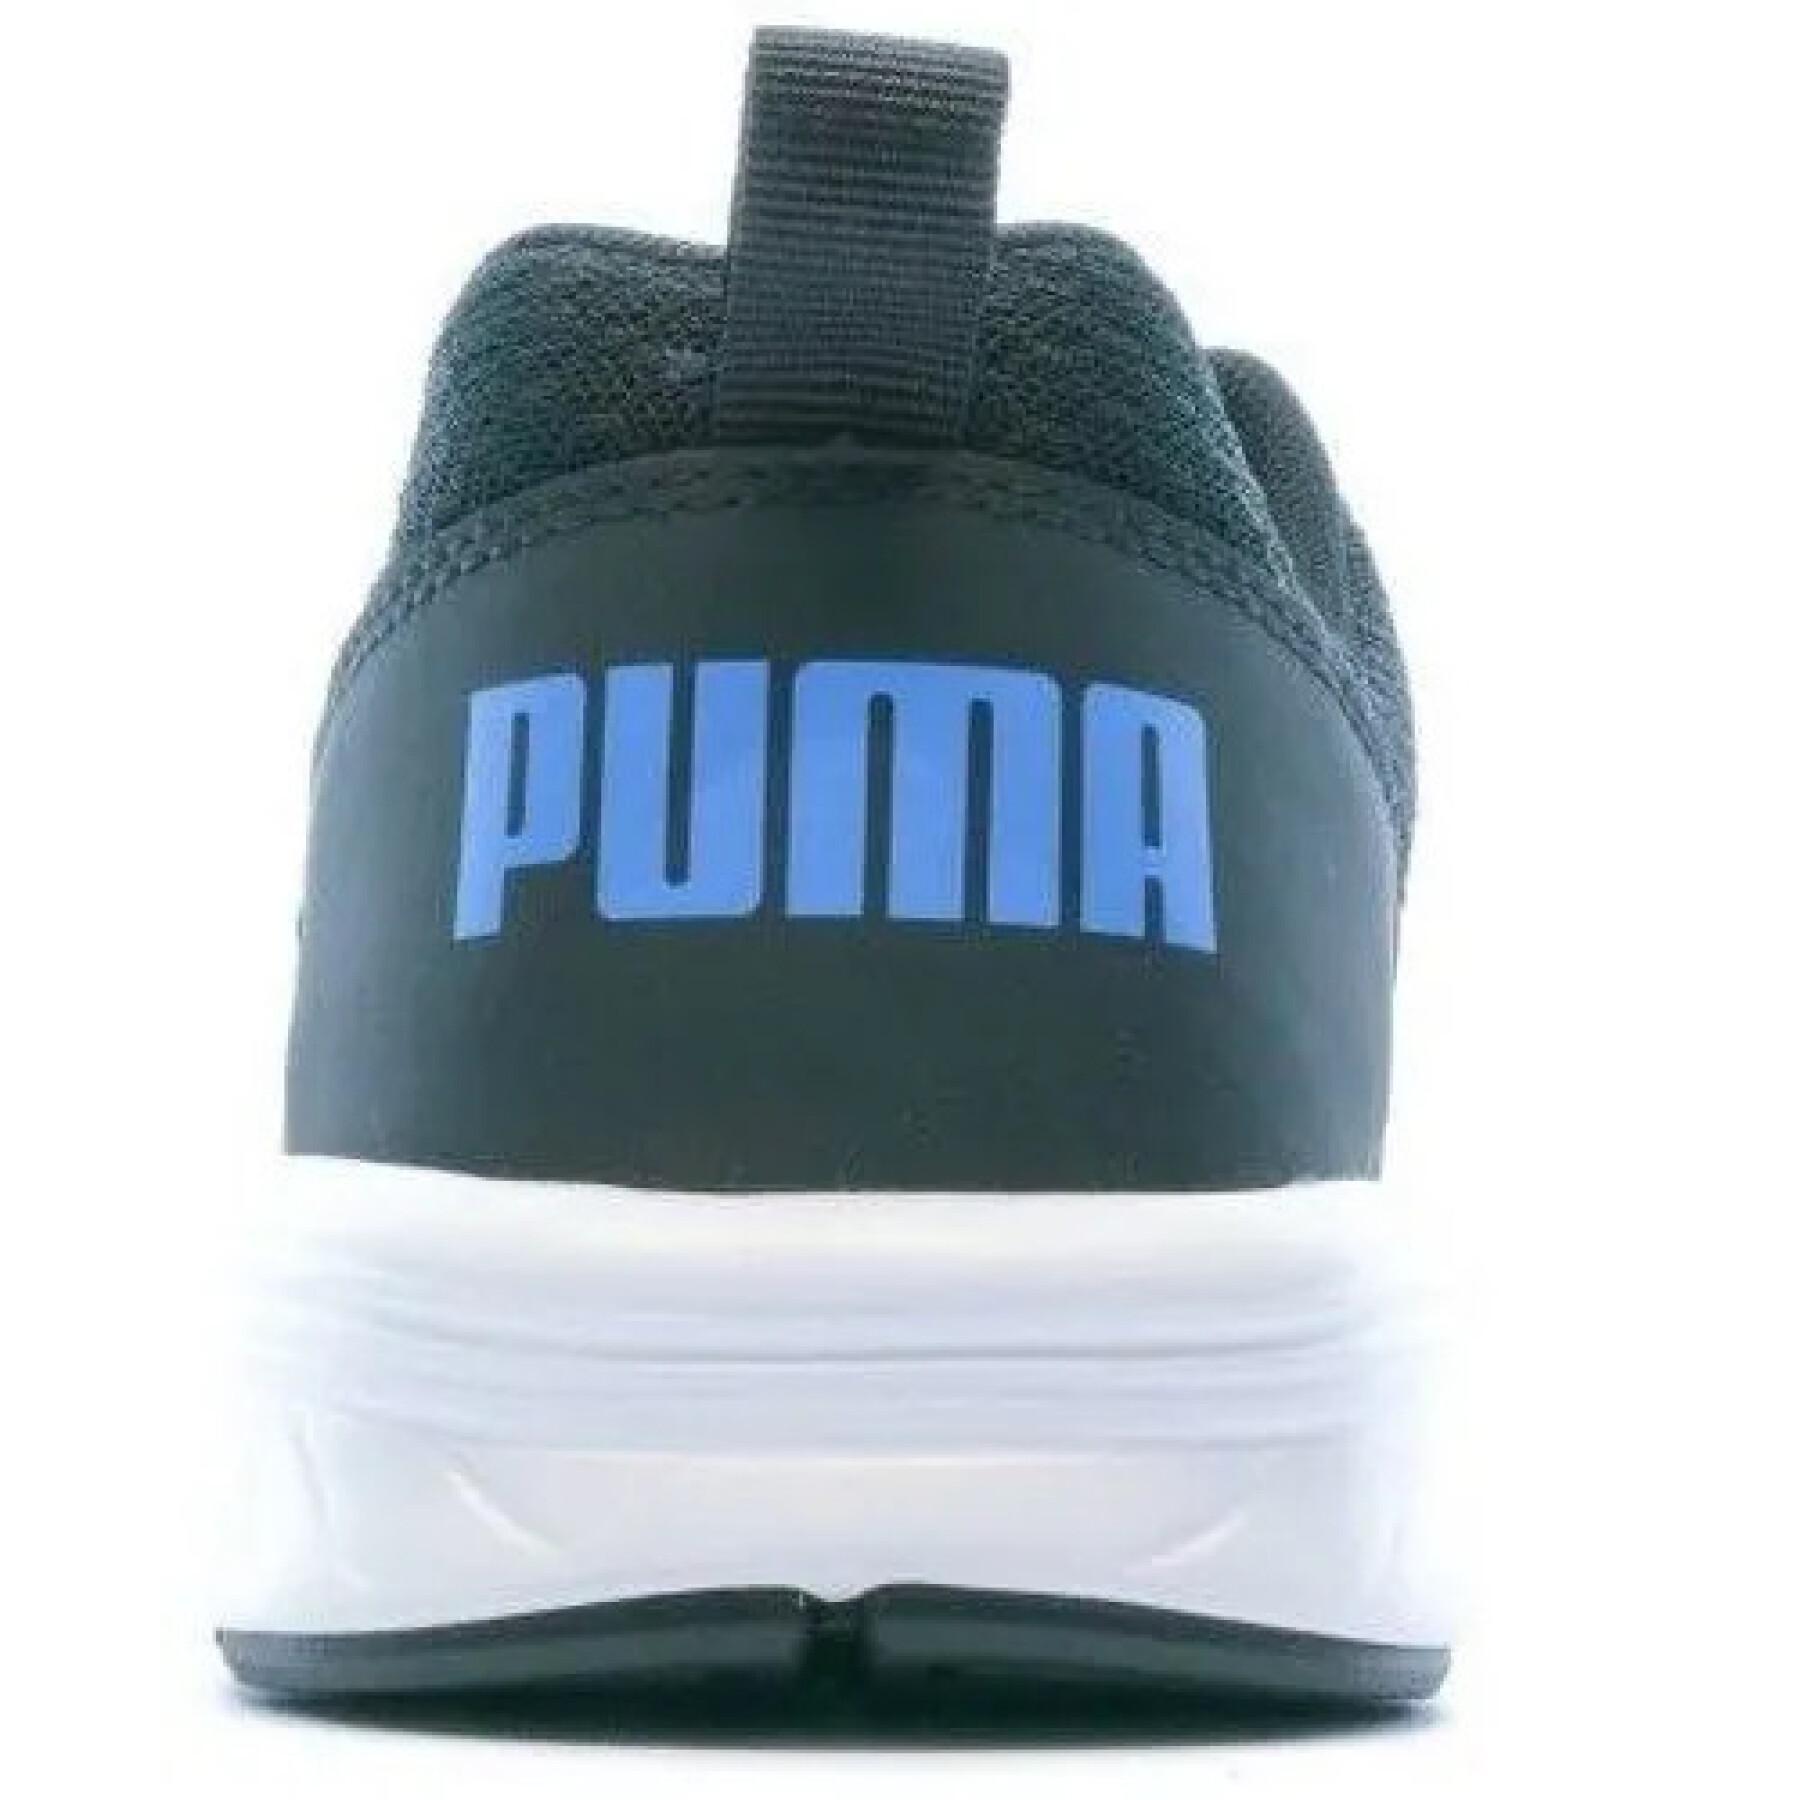 Children's shoes Puma nrgy comet